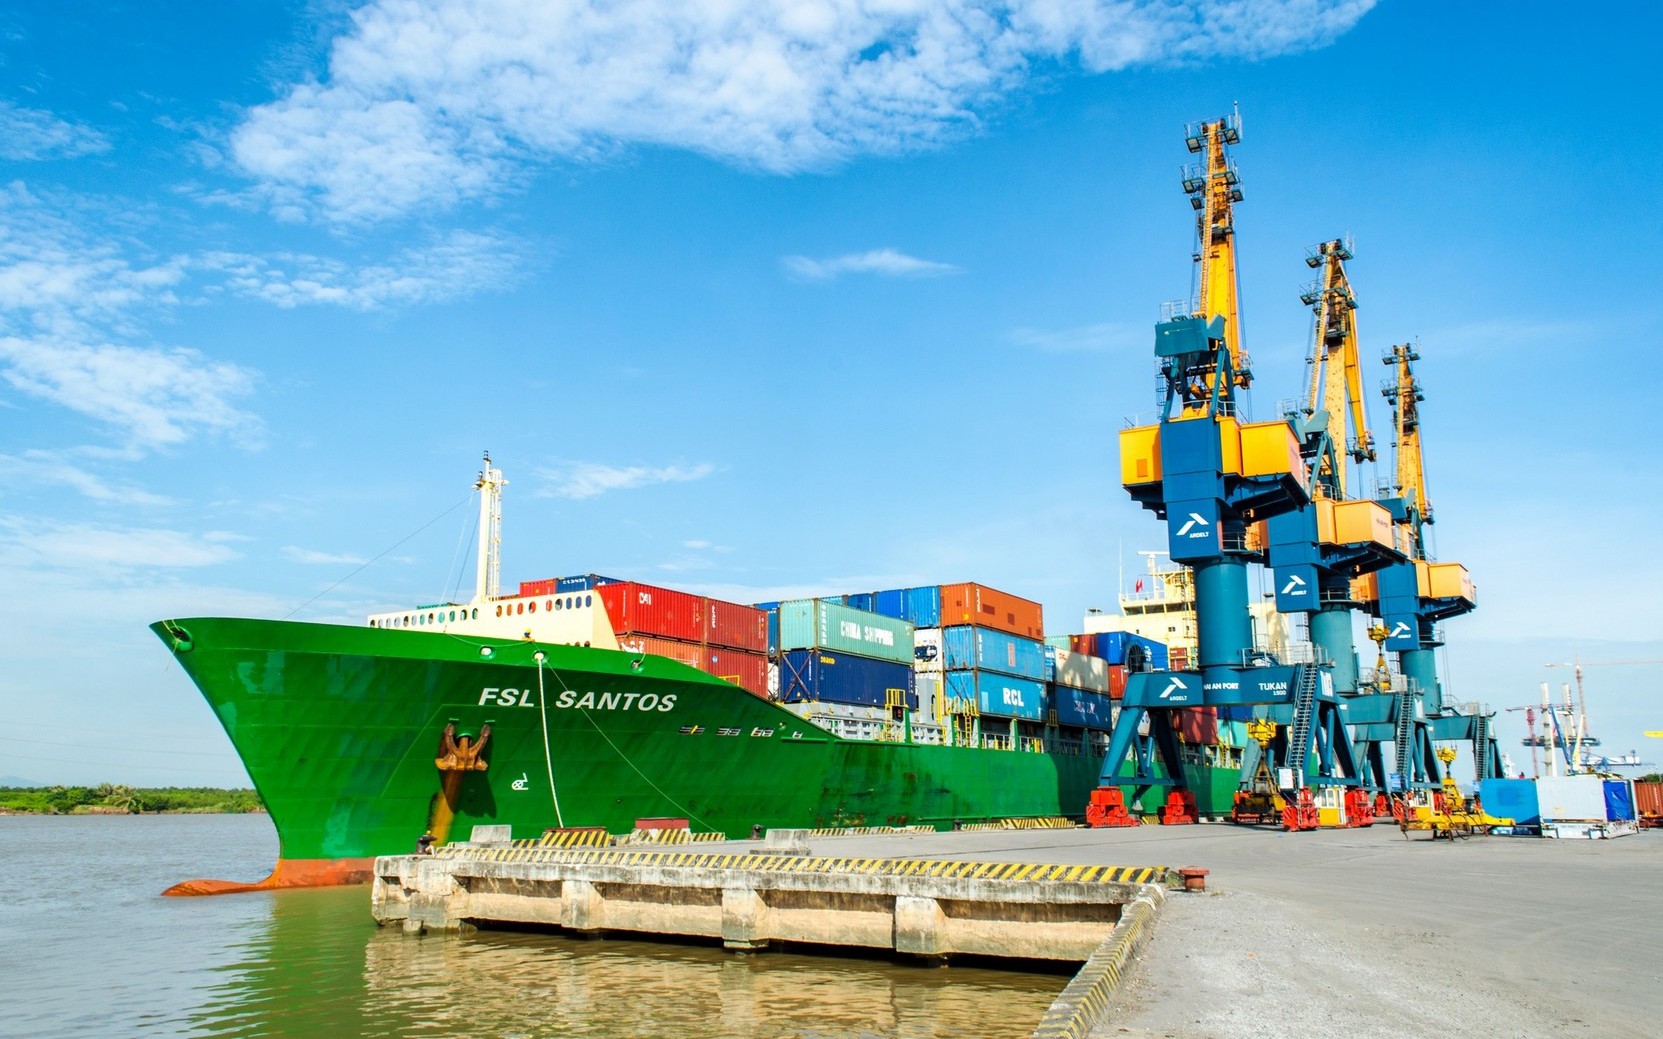 Công ty sở hữu đội tàu container lớn nhất Việt Nam lên kế hoạch lợi nhuận đi lùi năm thứ 2 liên tục, trả cổ tức tỷ lệ 20%